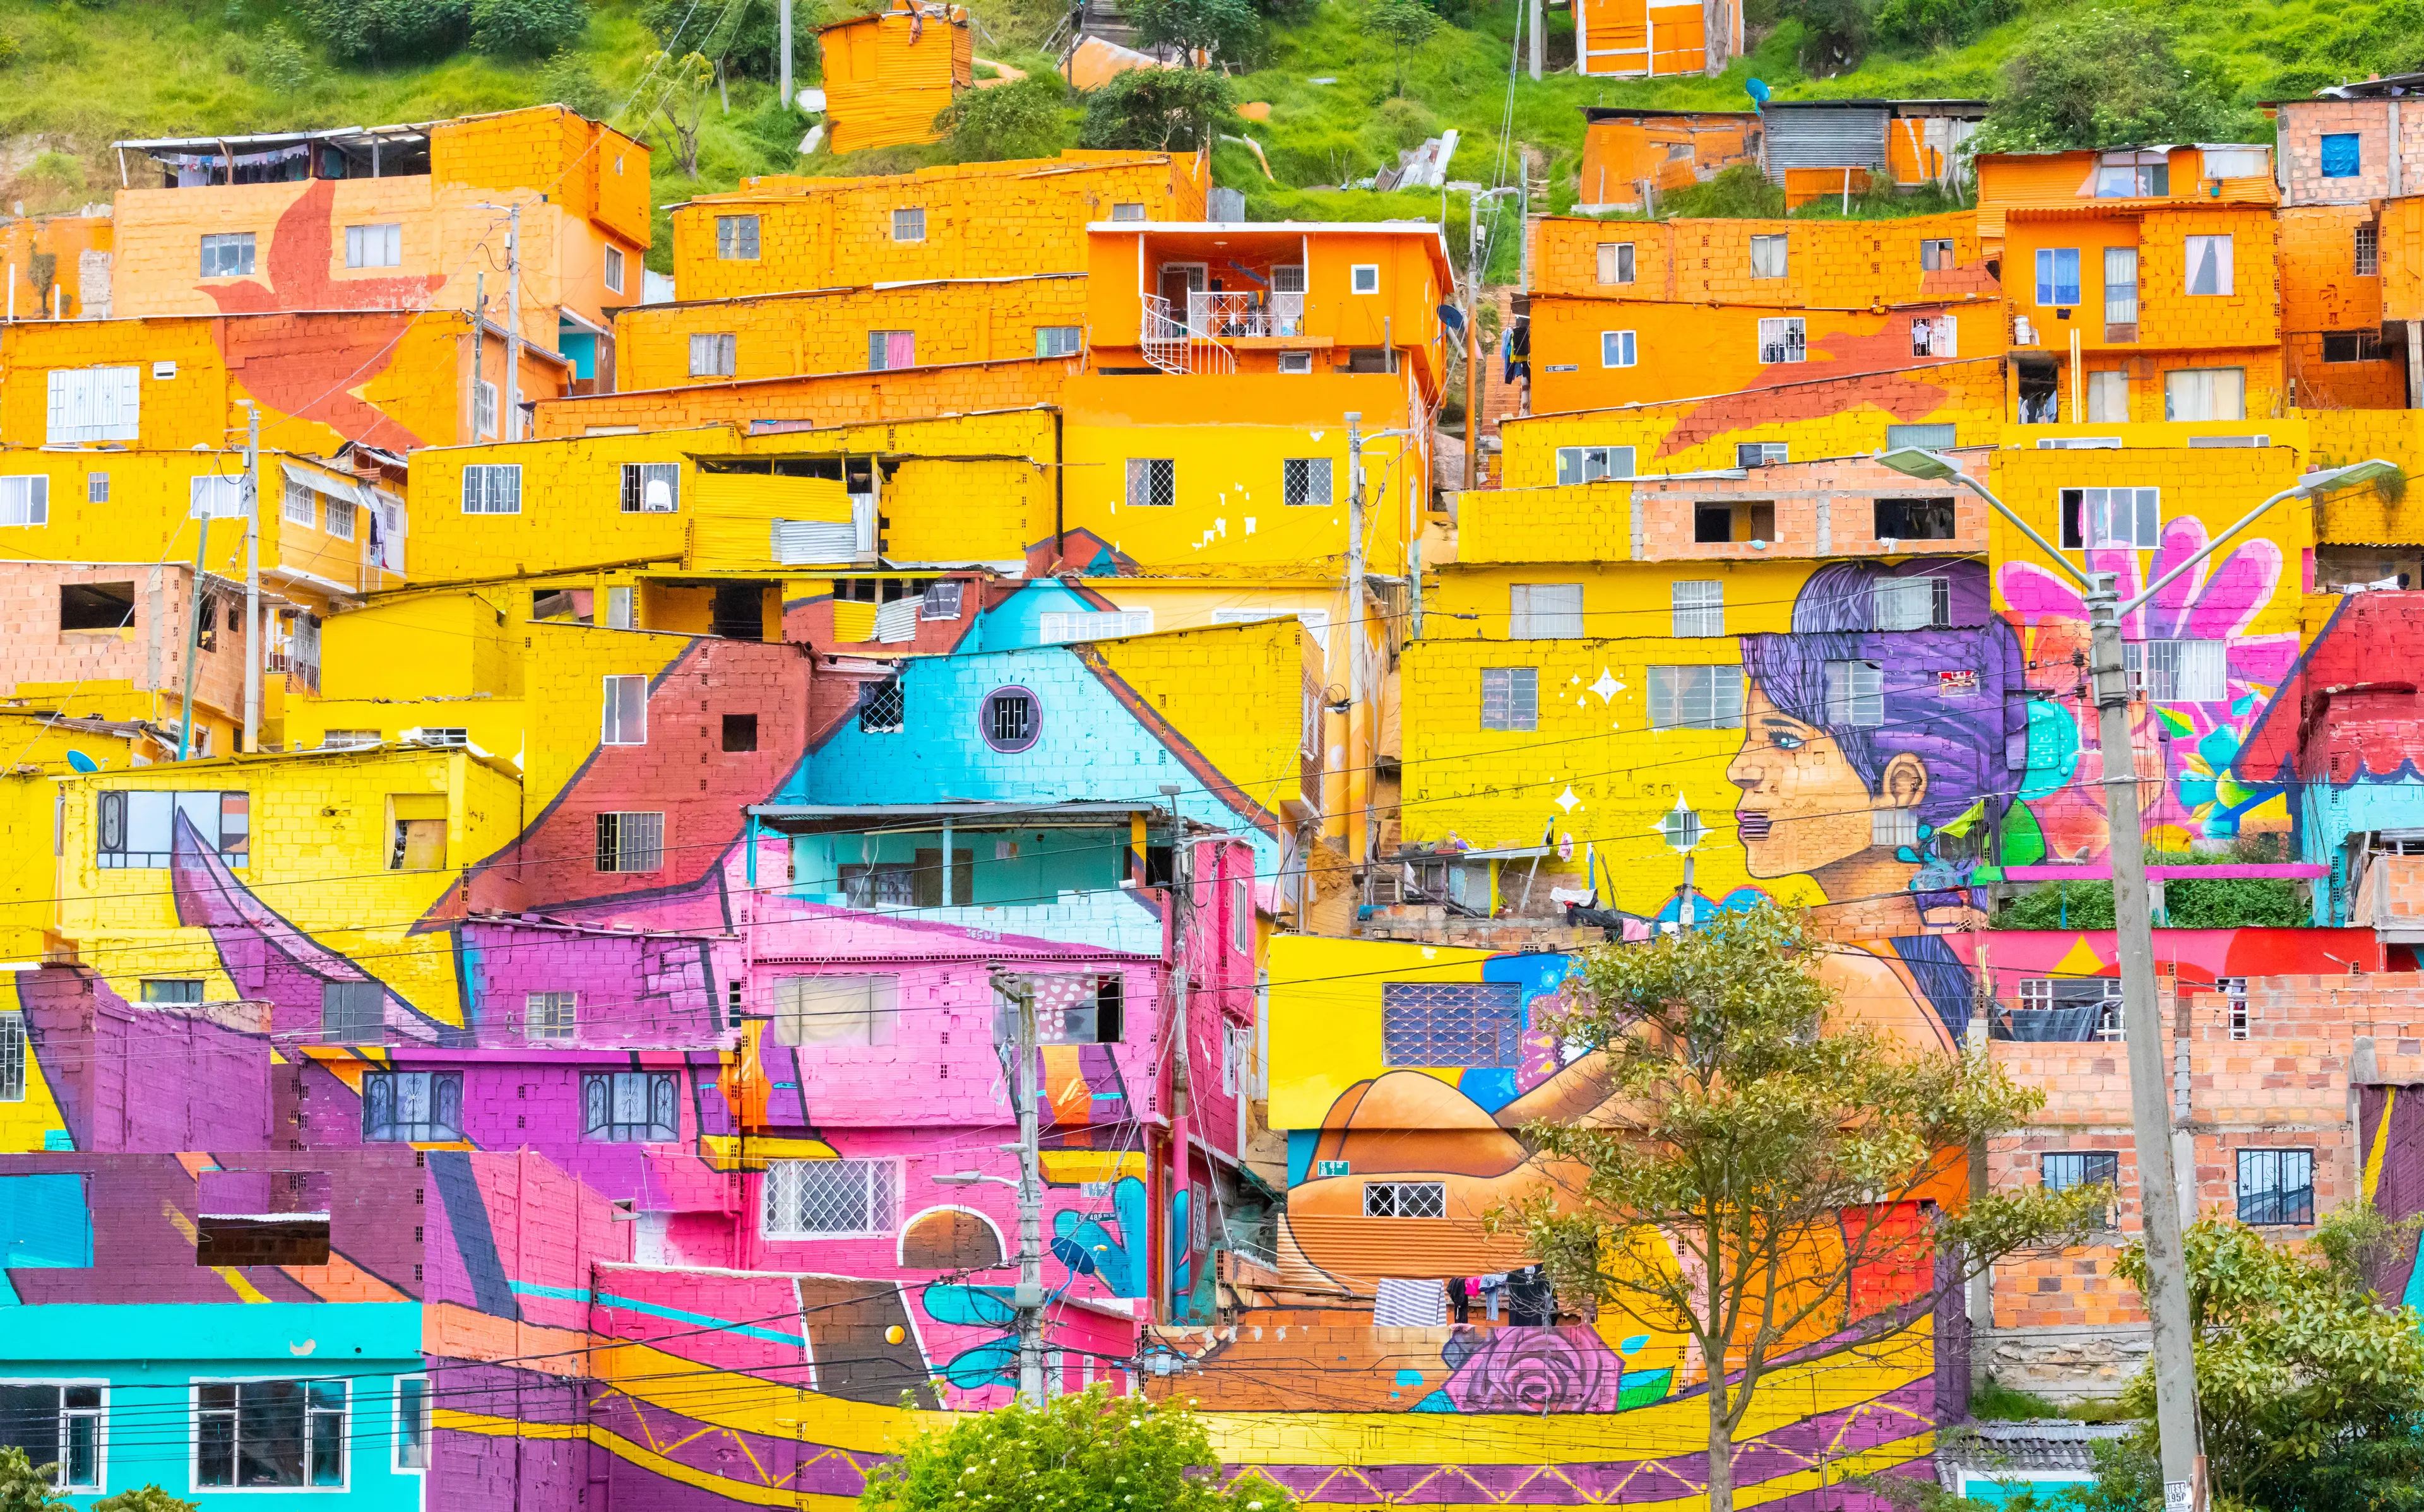 Los Pueblos colorful district